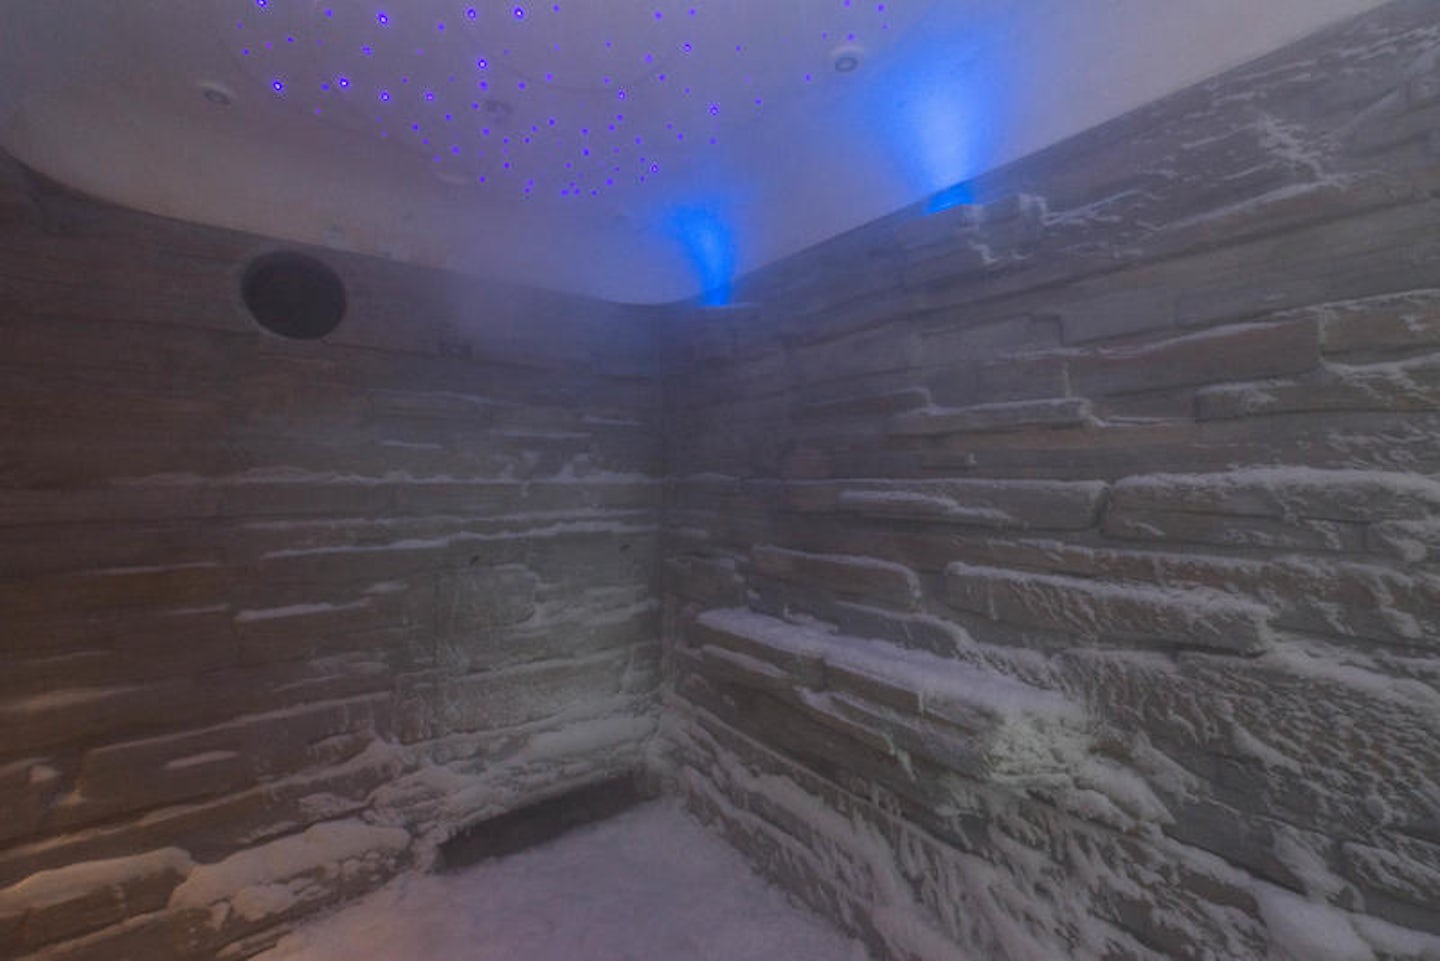 Snow Room on Norwegian Escape